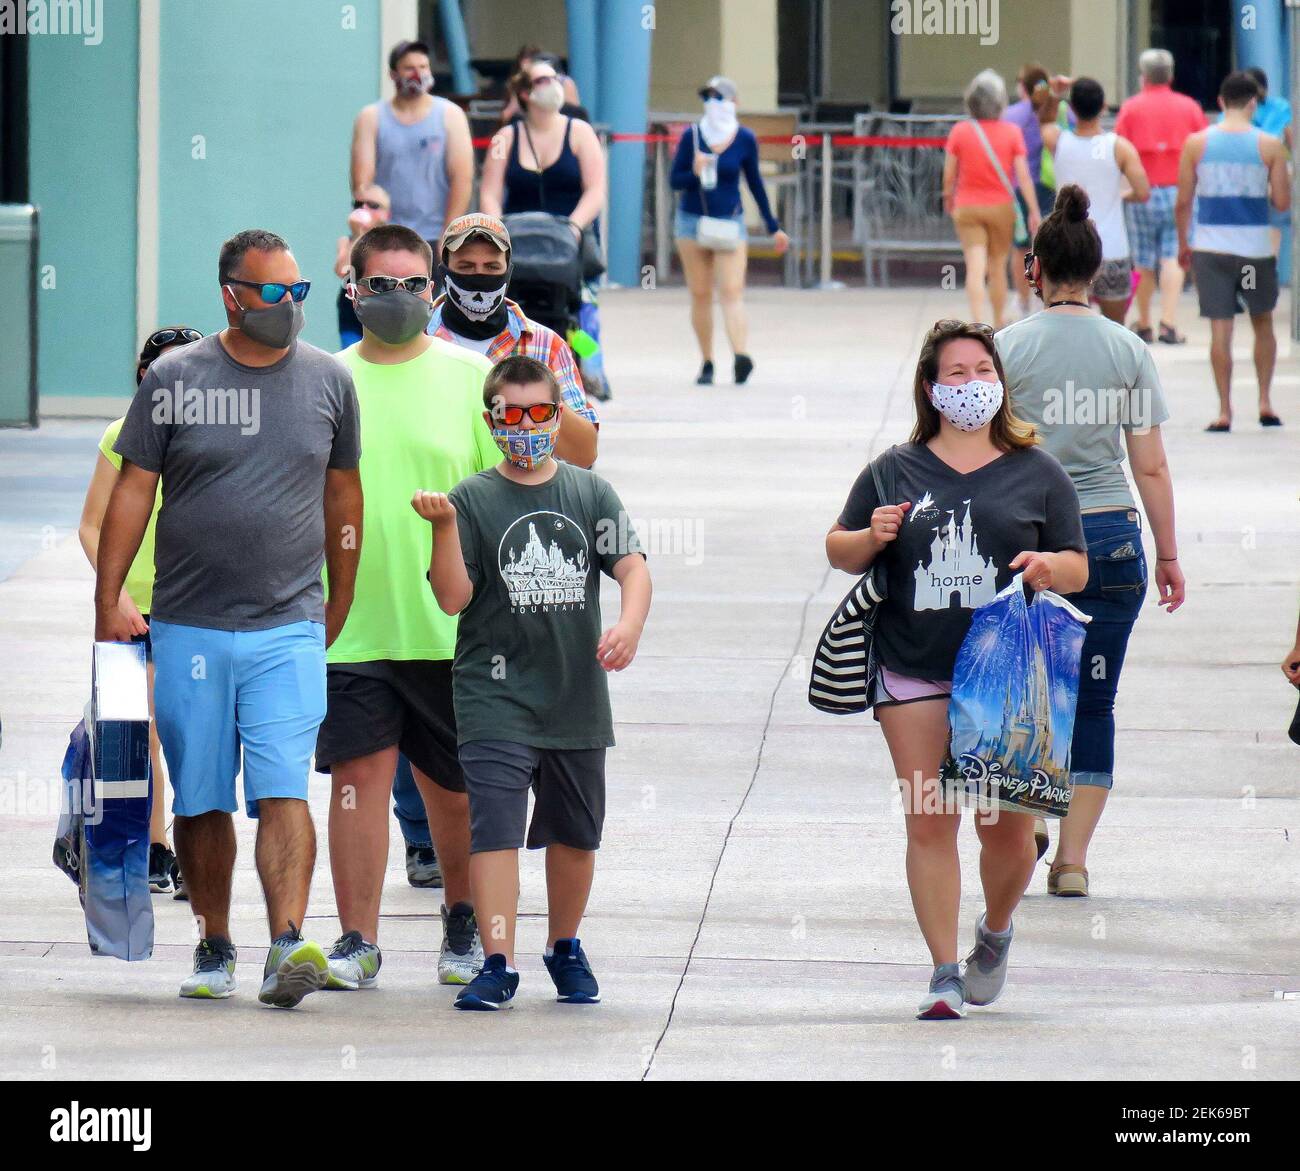 Los huéspedes usan máscaras faciales mientras visitan el distrito de tiendas y restaurantes de Disney Springs en Lake buena Vista, Fla., miércoles, 17 de junio de 2020. El Departamento de Salud de la Florida reportó 3,207 nuevos casos de Covid-19 el jueves, marcando un récord diario para la Florida desde que comenzó la pandemia. (Joe Burbank/Orlando Sentinel/TNS) Foto de stock